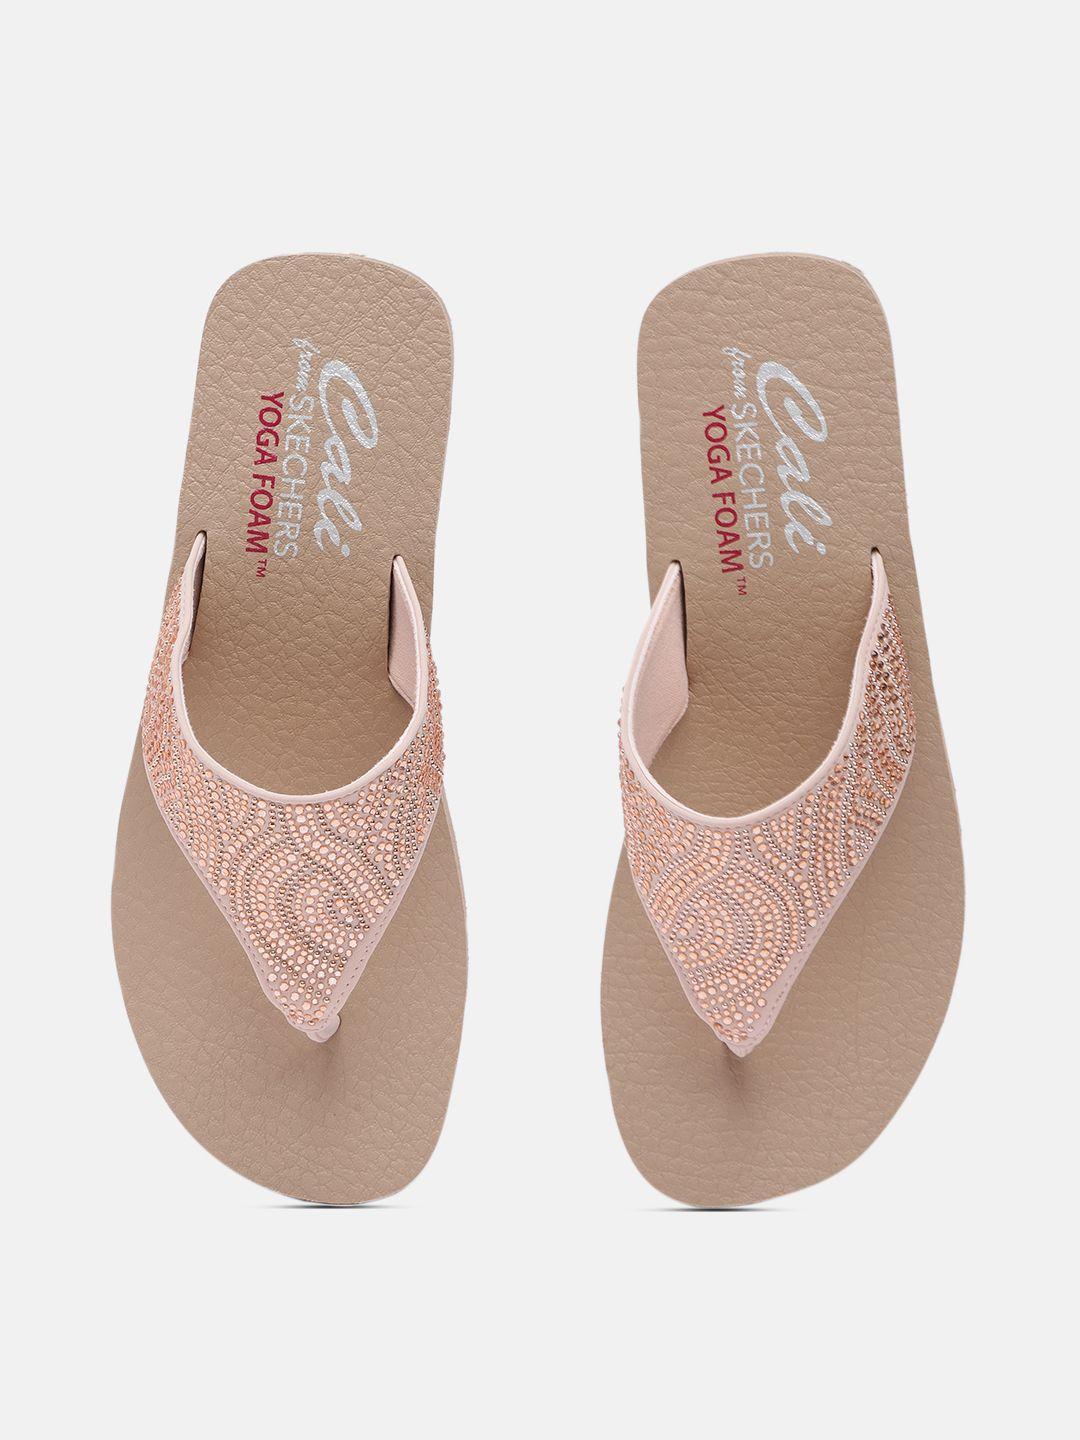 Skechers Nude Pink Embellished VINYASA STONE CANDY Platform Sandals